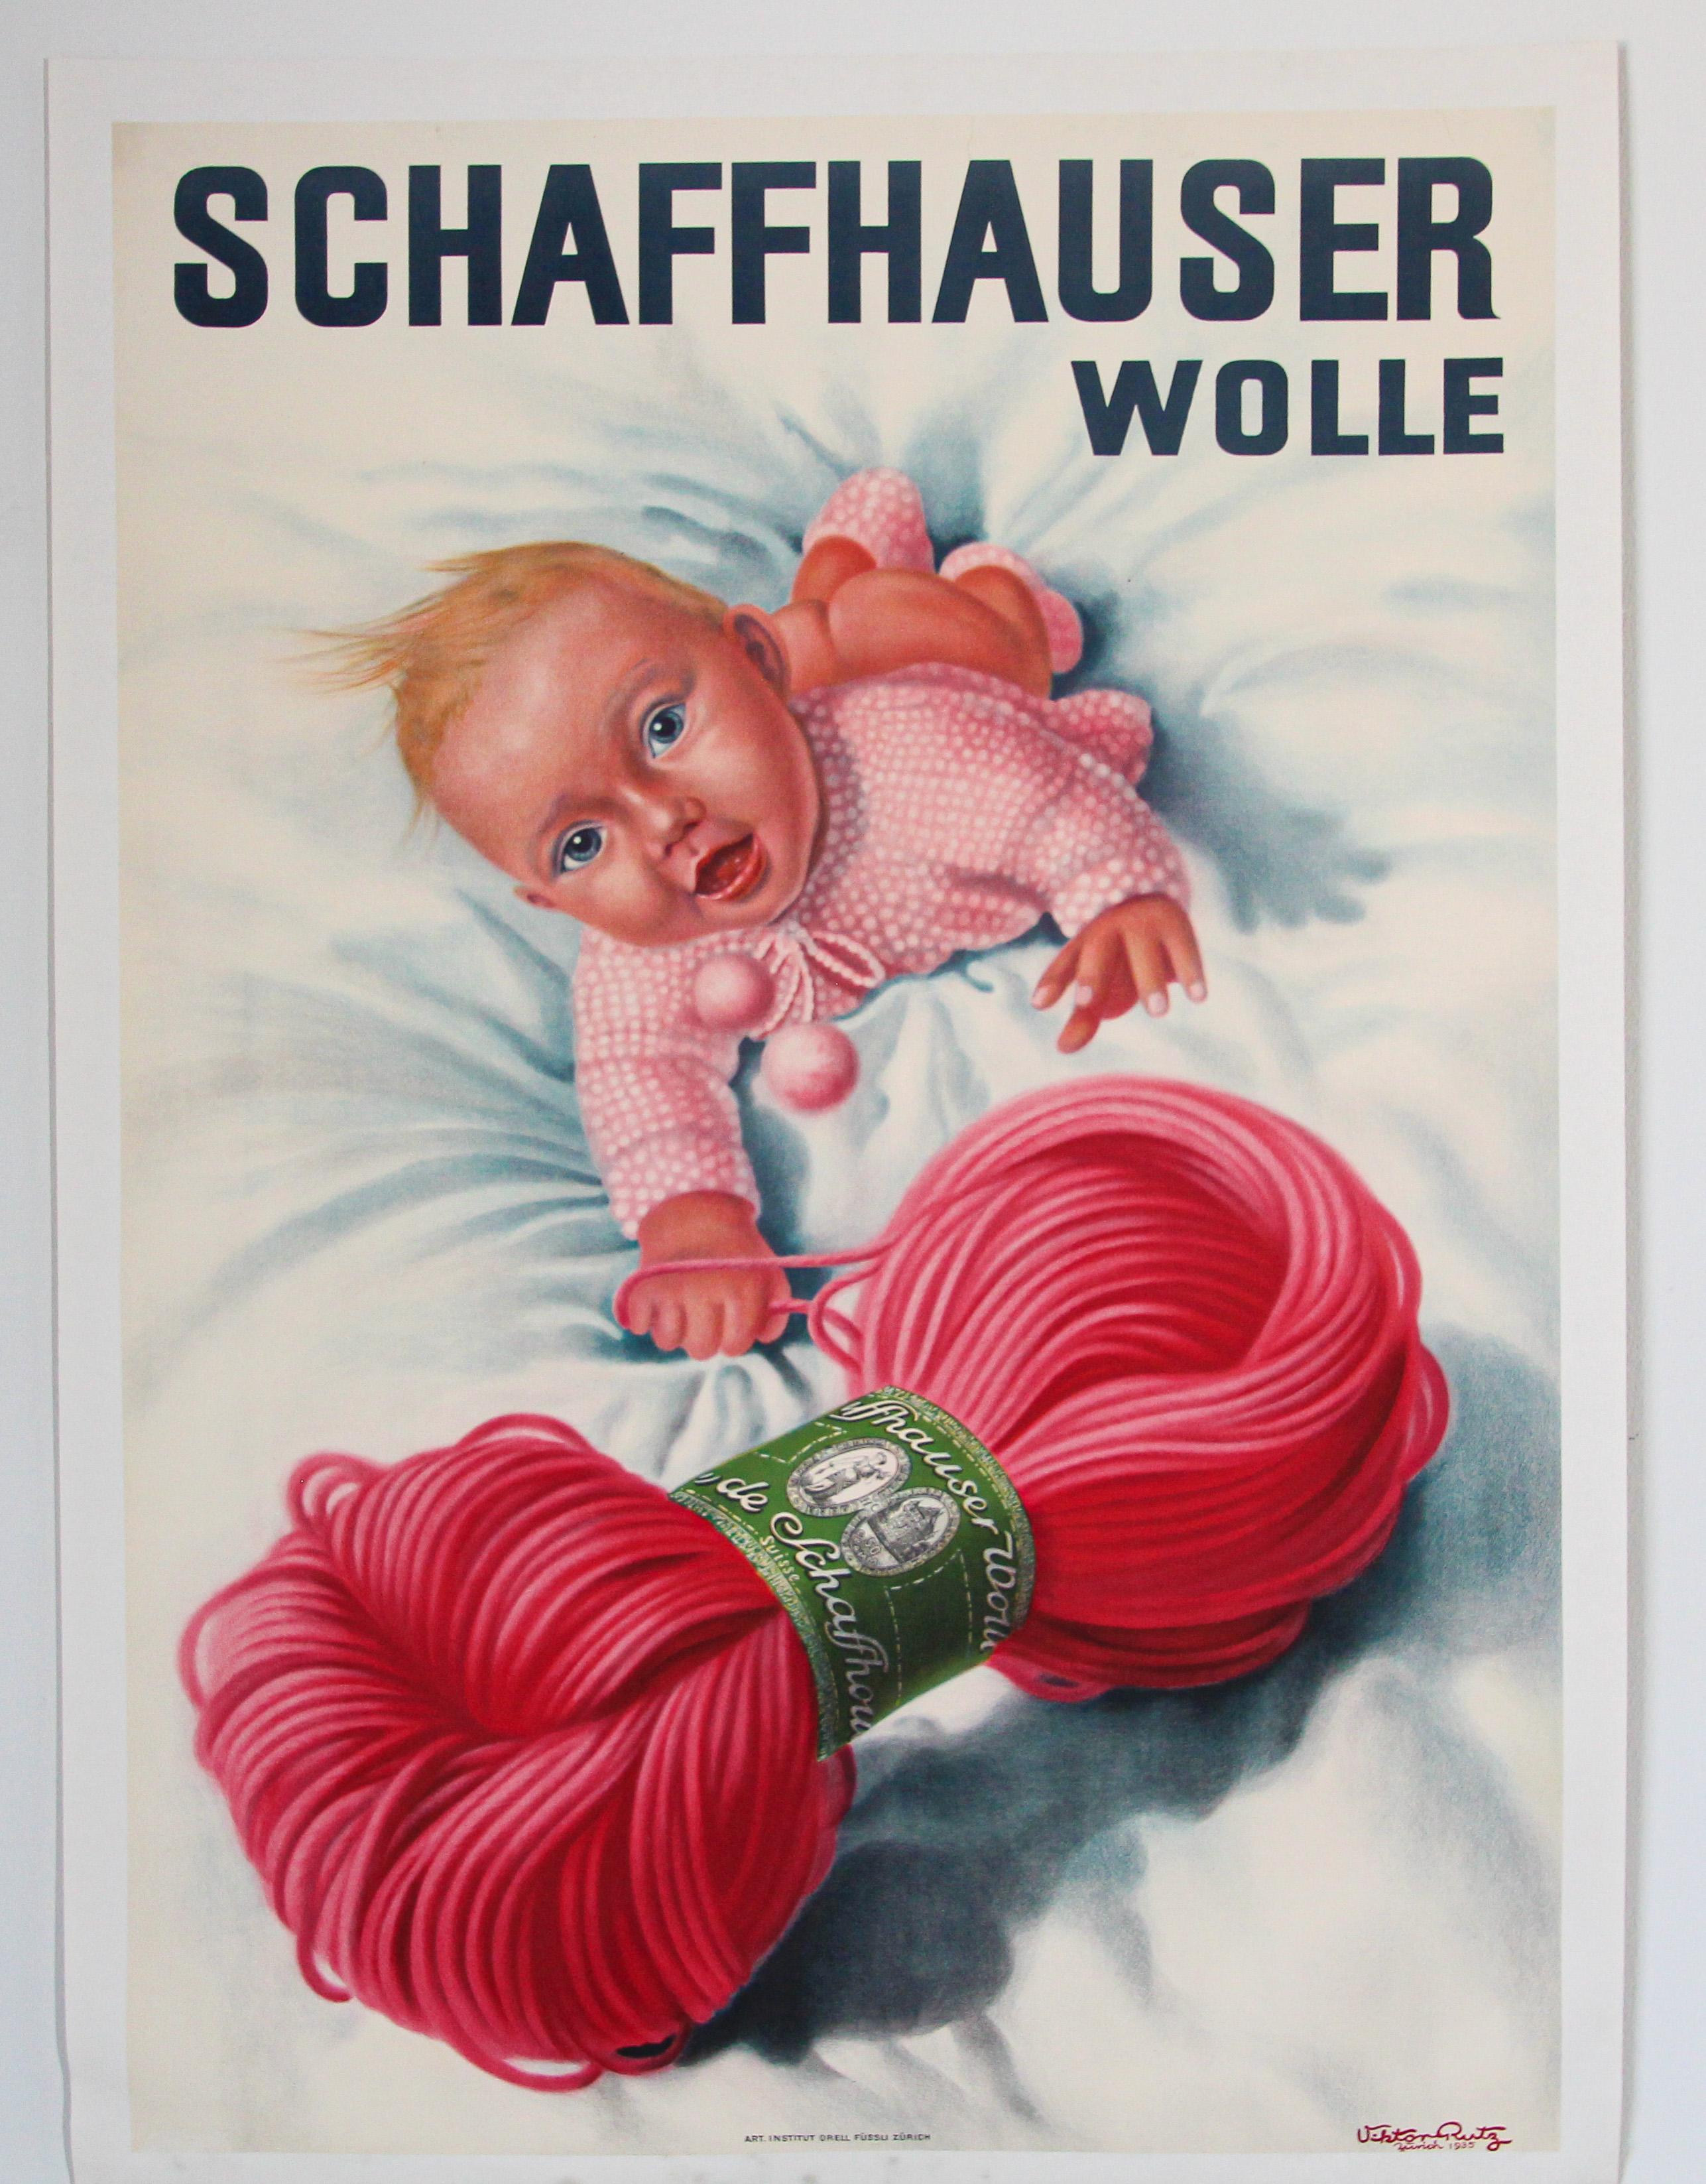 Original Vintage Plakat Schweizer Schaffhauser Wolle Wolle Garn Stricken 1935 Baby.
Dies ist ein originaler 1. Druck dieses Plakates von Viktor Rutz Zürich.
Es wurde 1935 gedruckt und diente der Werbung für Schaffhauser Wolle.
Werbeplakat für